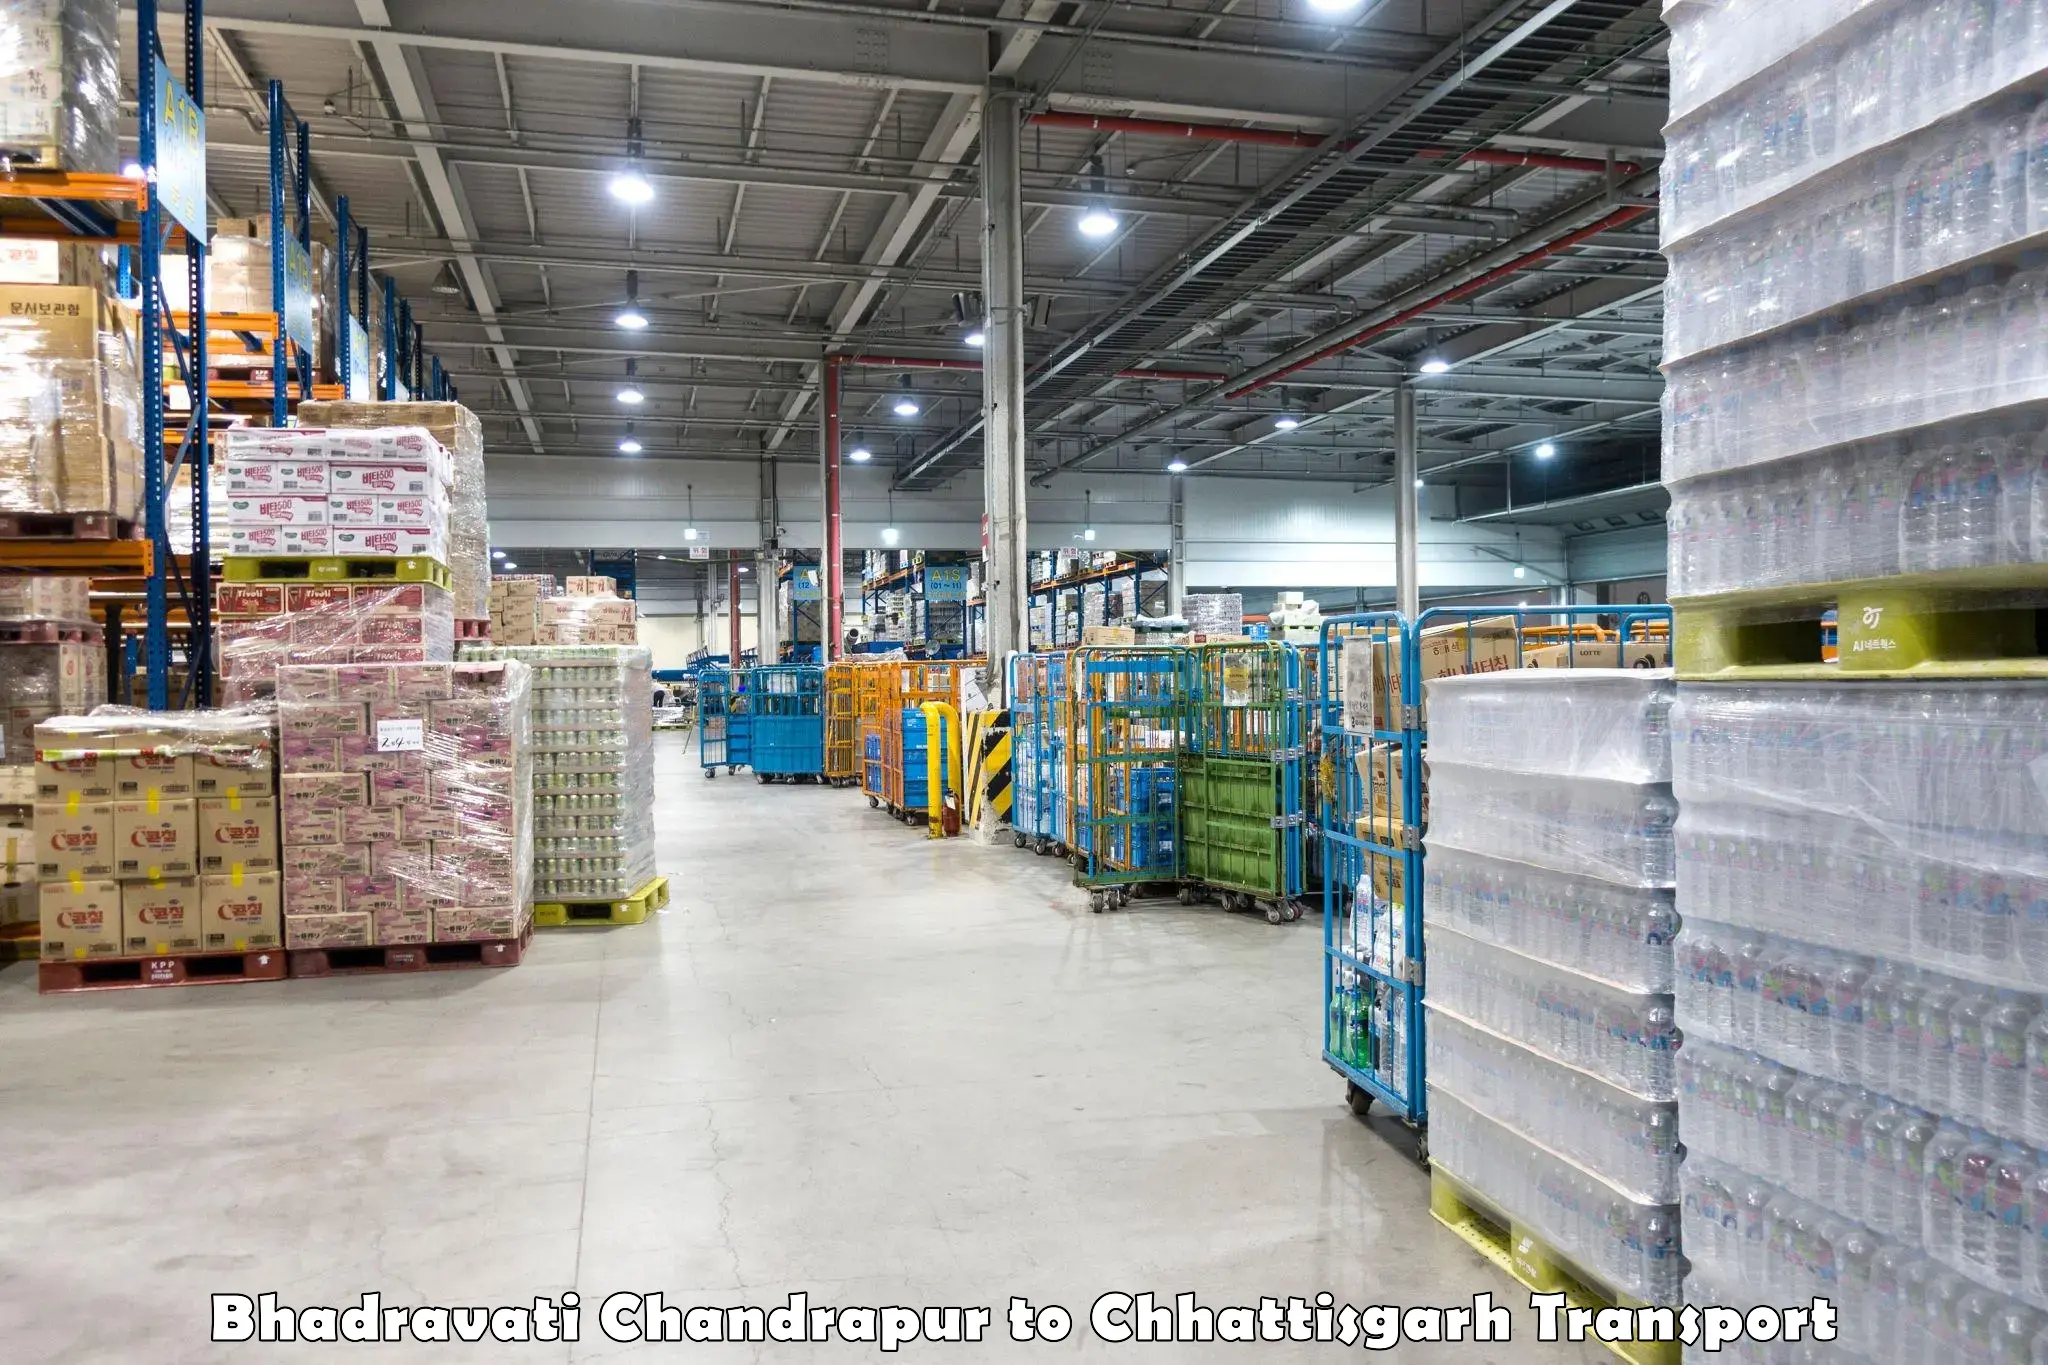 Truck transport companies in India Bhadravati Chandrapur to Chhattisgarh